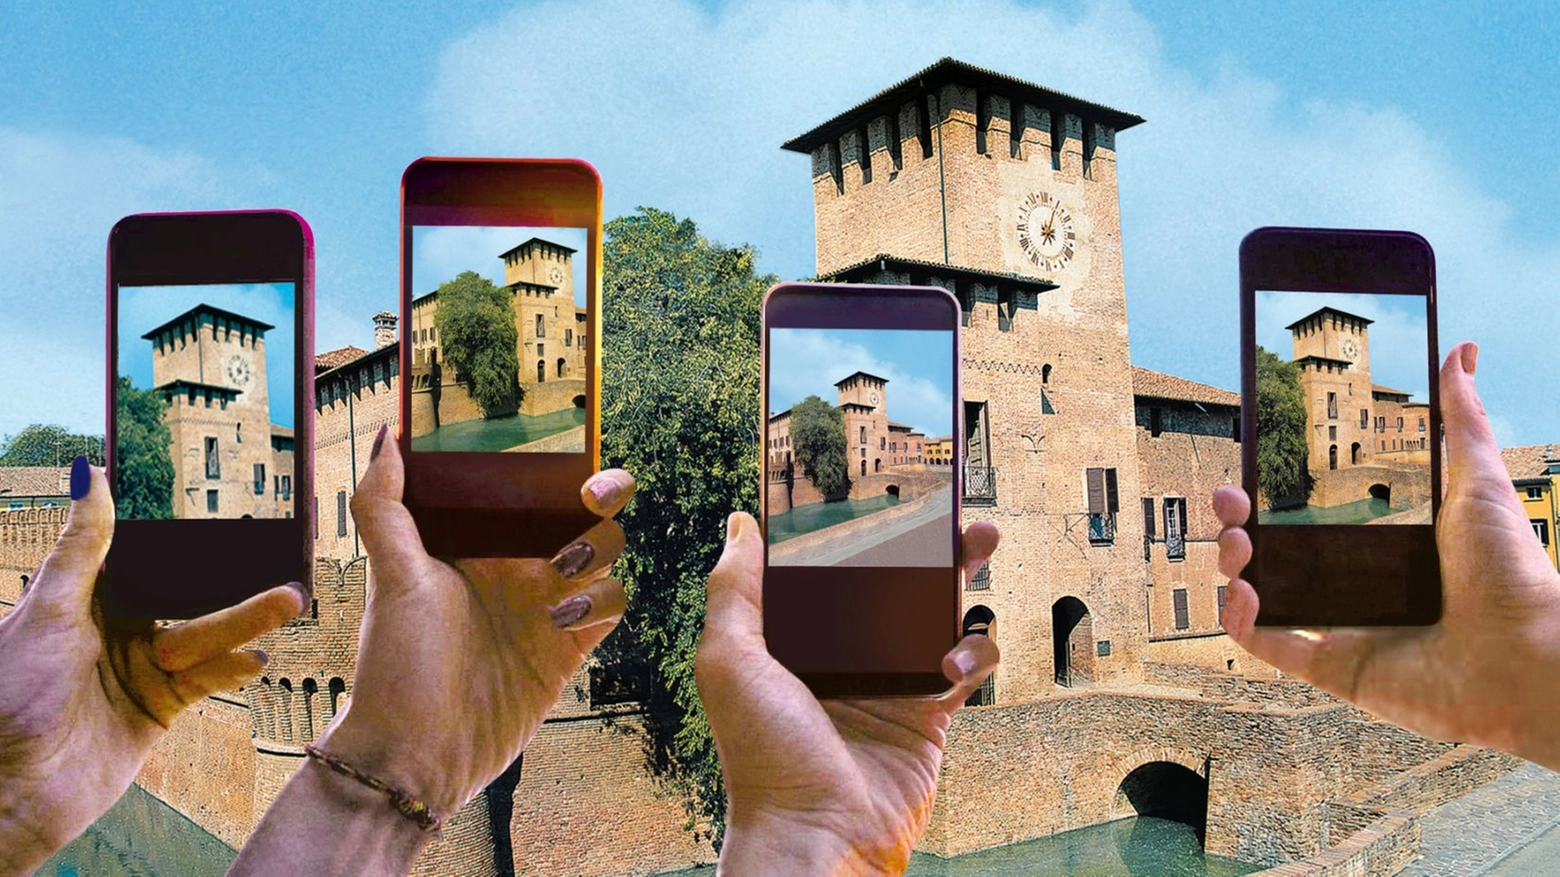 Sfida a colpi di enigmi in oltre 30 Comuni delle province di Piacenza, Parma e Reggio Emilia. E ci sono anche le X-Scape Experience Castle, ovvero le fughe dal castello